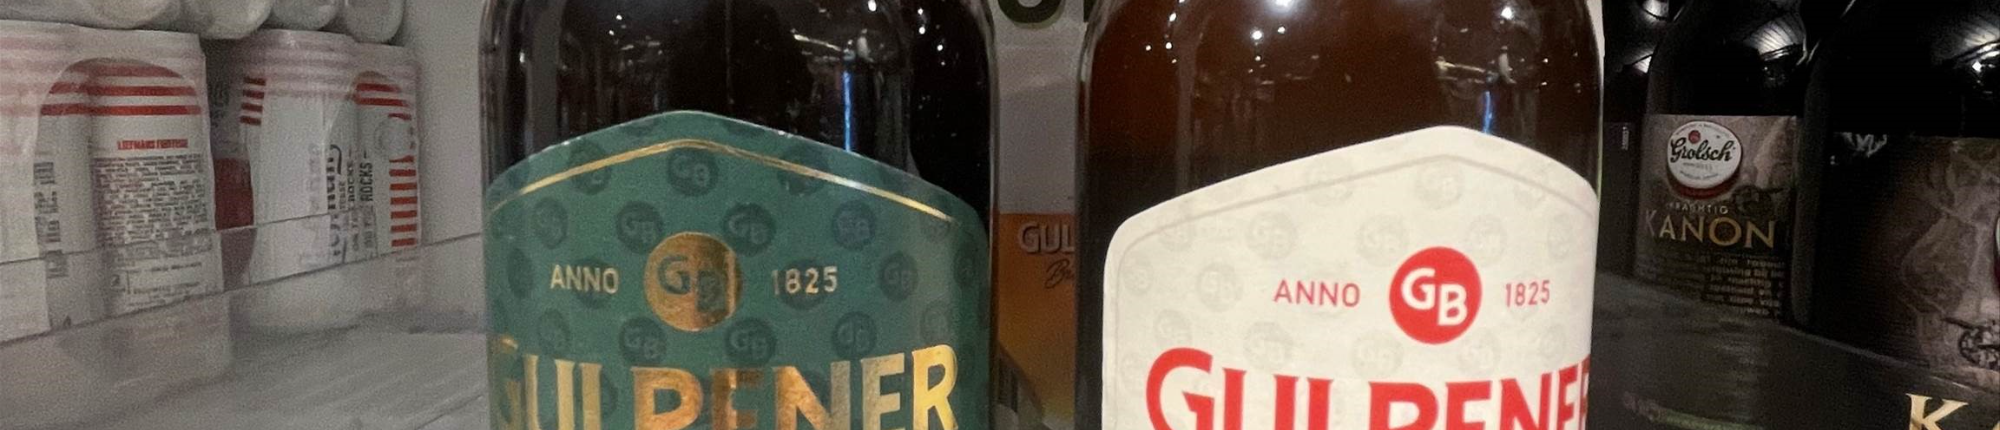 Online Beer Tasting Gulpener